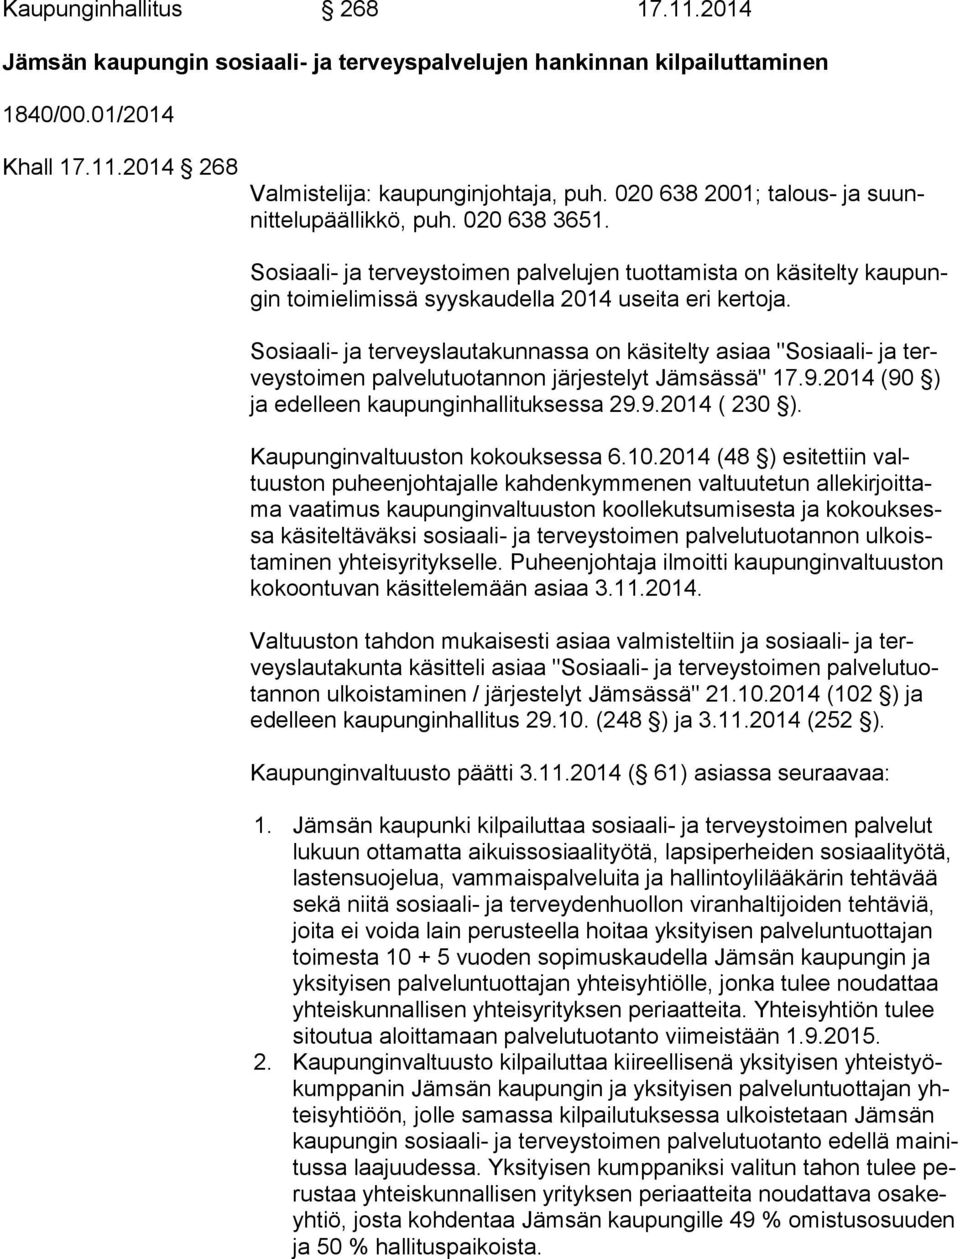 Sosiaali- ja terveyslautakunnassa on käsitelty asiaa "Sosiaali- ja terveys toi men palvelutuotannon järjestelyt Jämsässä" 17.9.2014 (90 ) ja edelleen kaupunginhallituksessa 29.9.2014 ( 230 ).